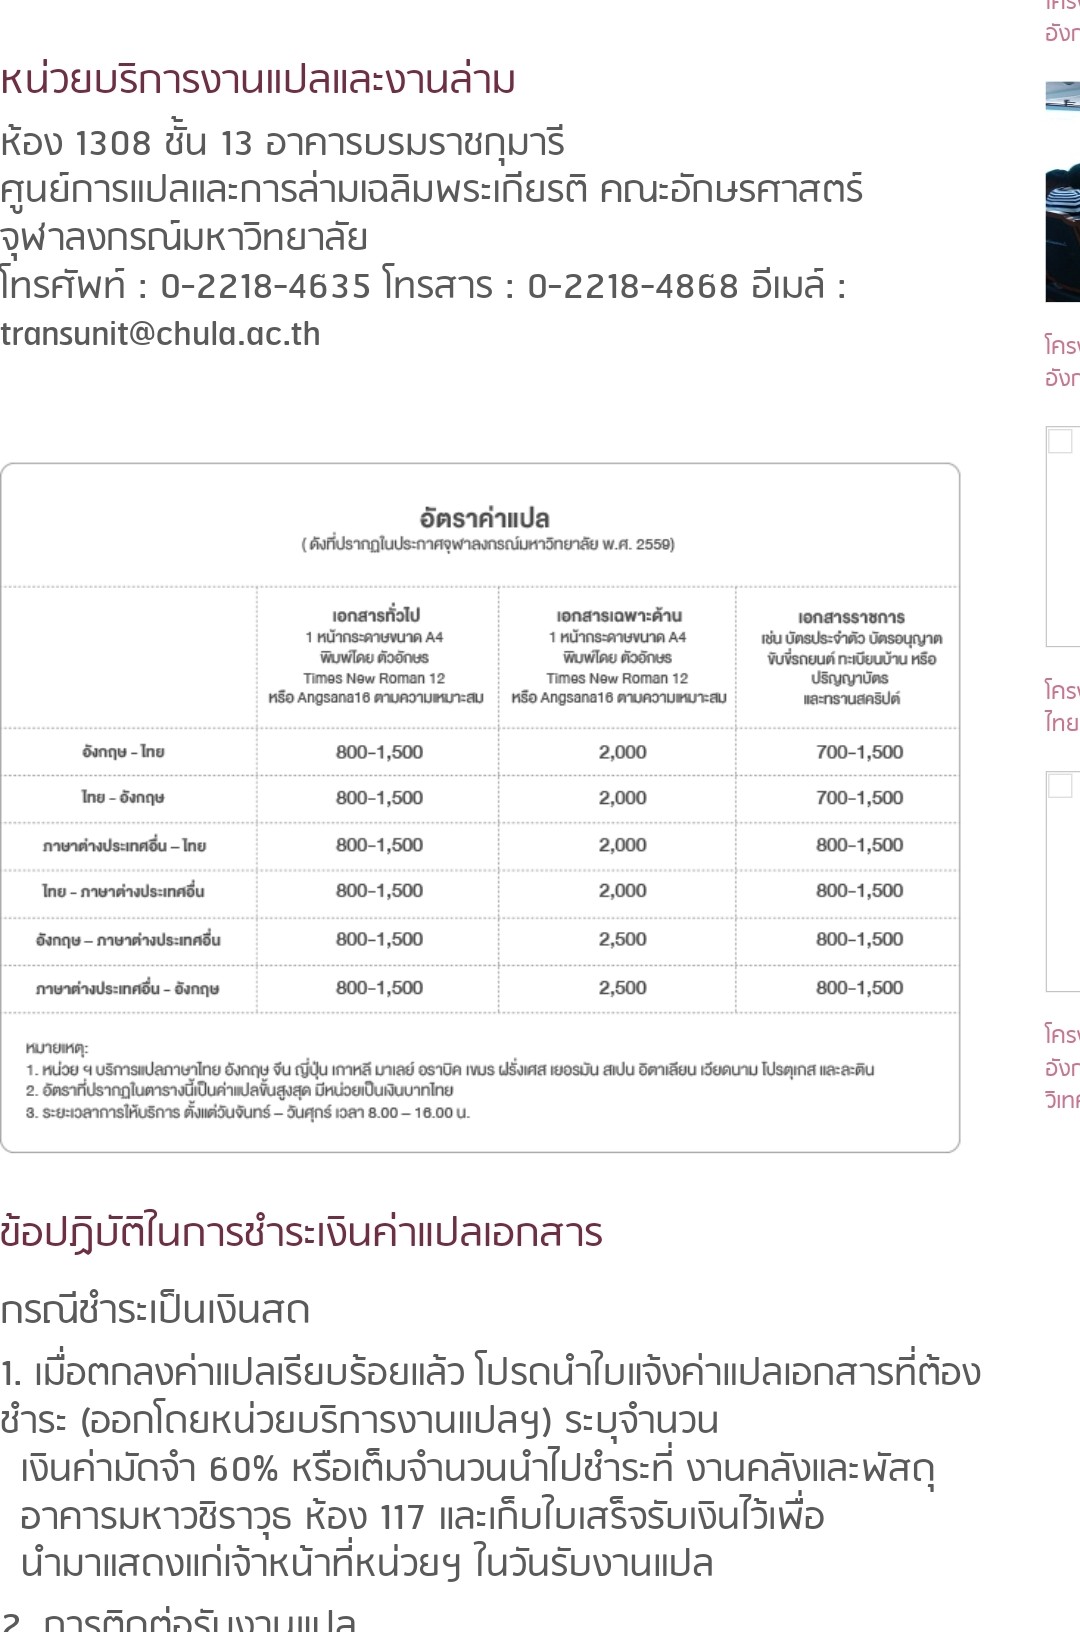 อยากทราบเรทราคาการแปลเอกสารจากภาษาอังกฤษเป็นภาษาไทยค่ะ - Pantip